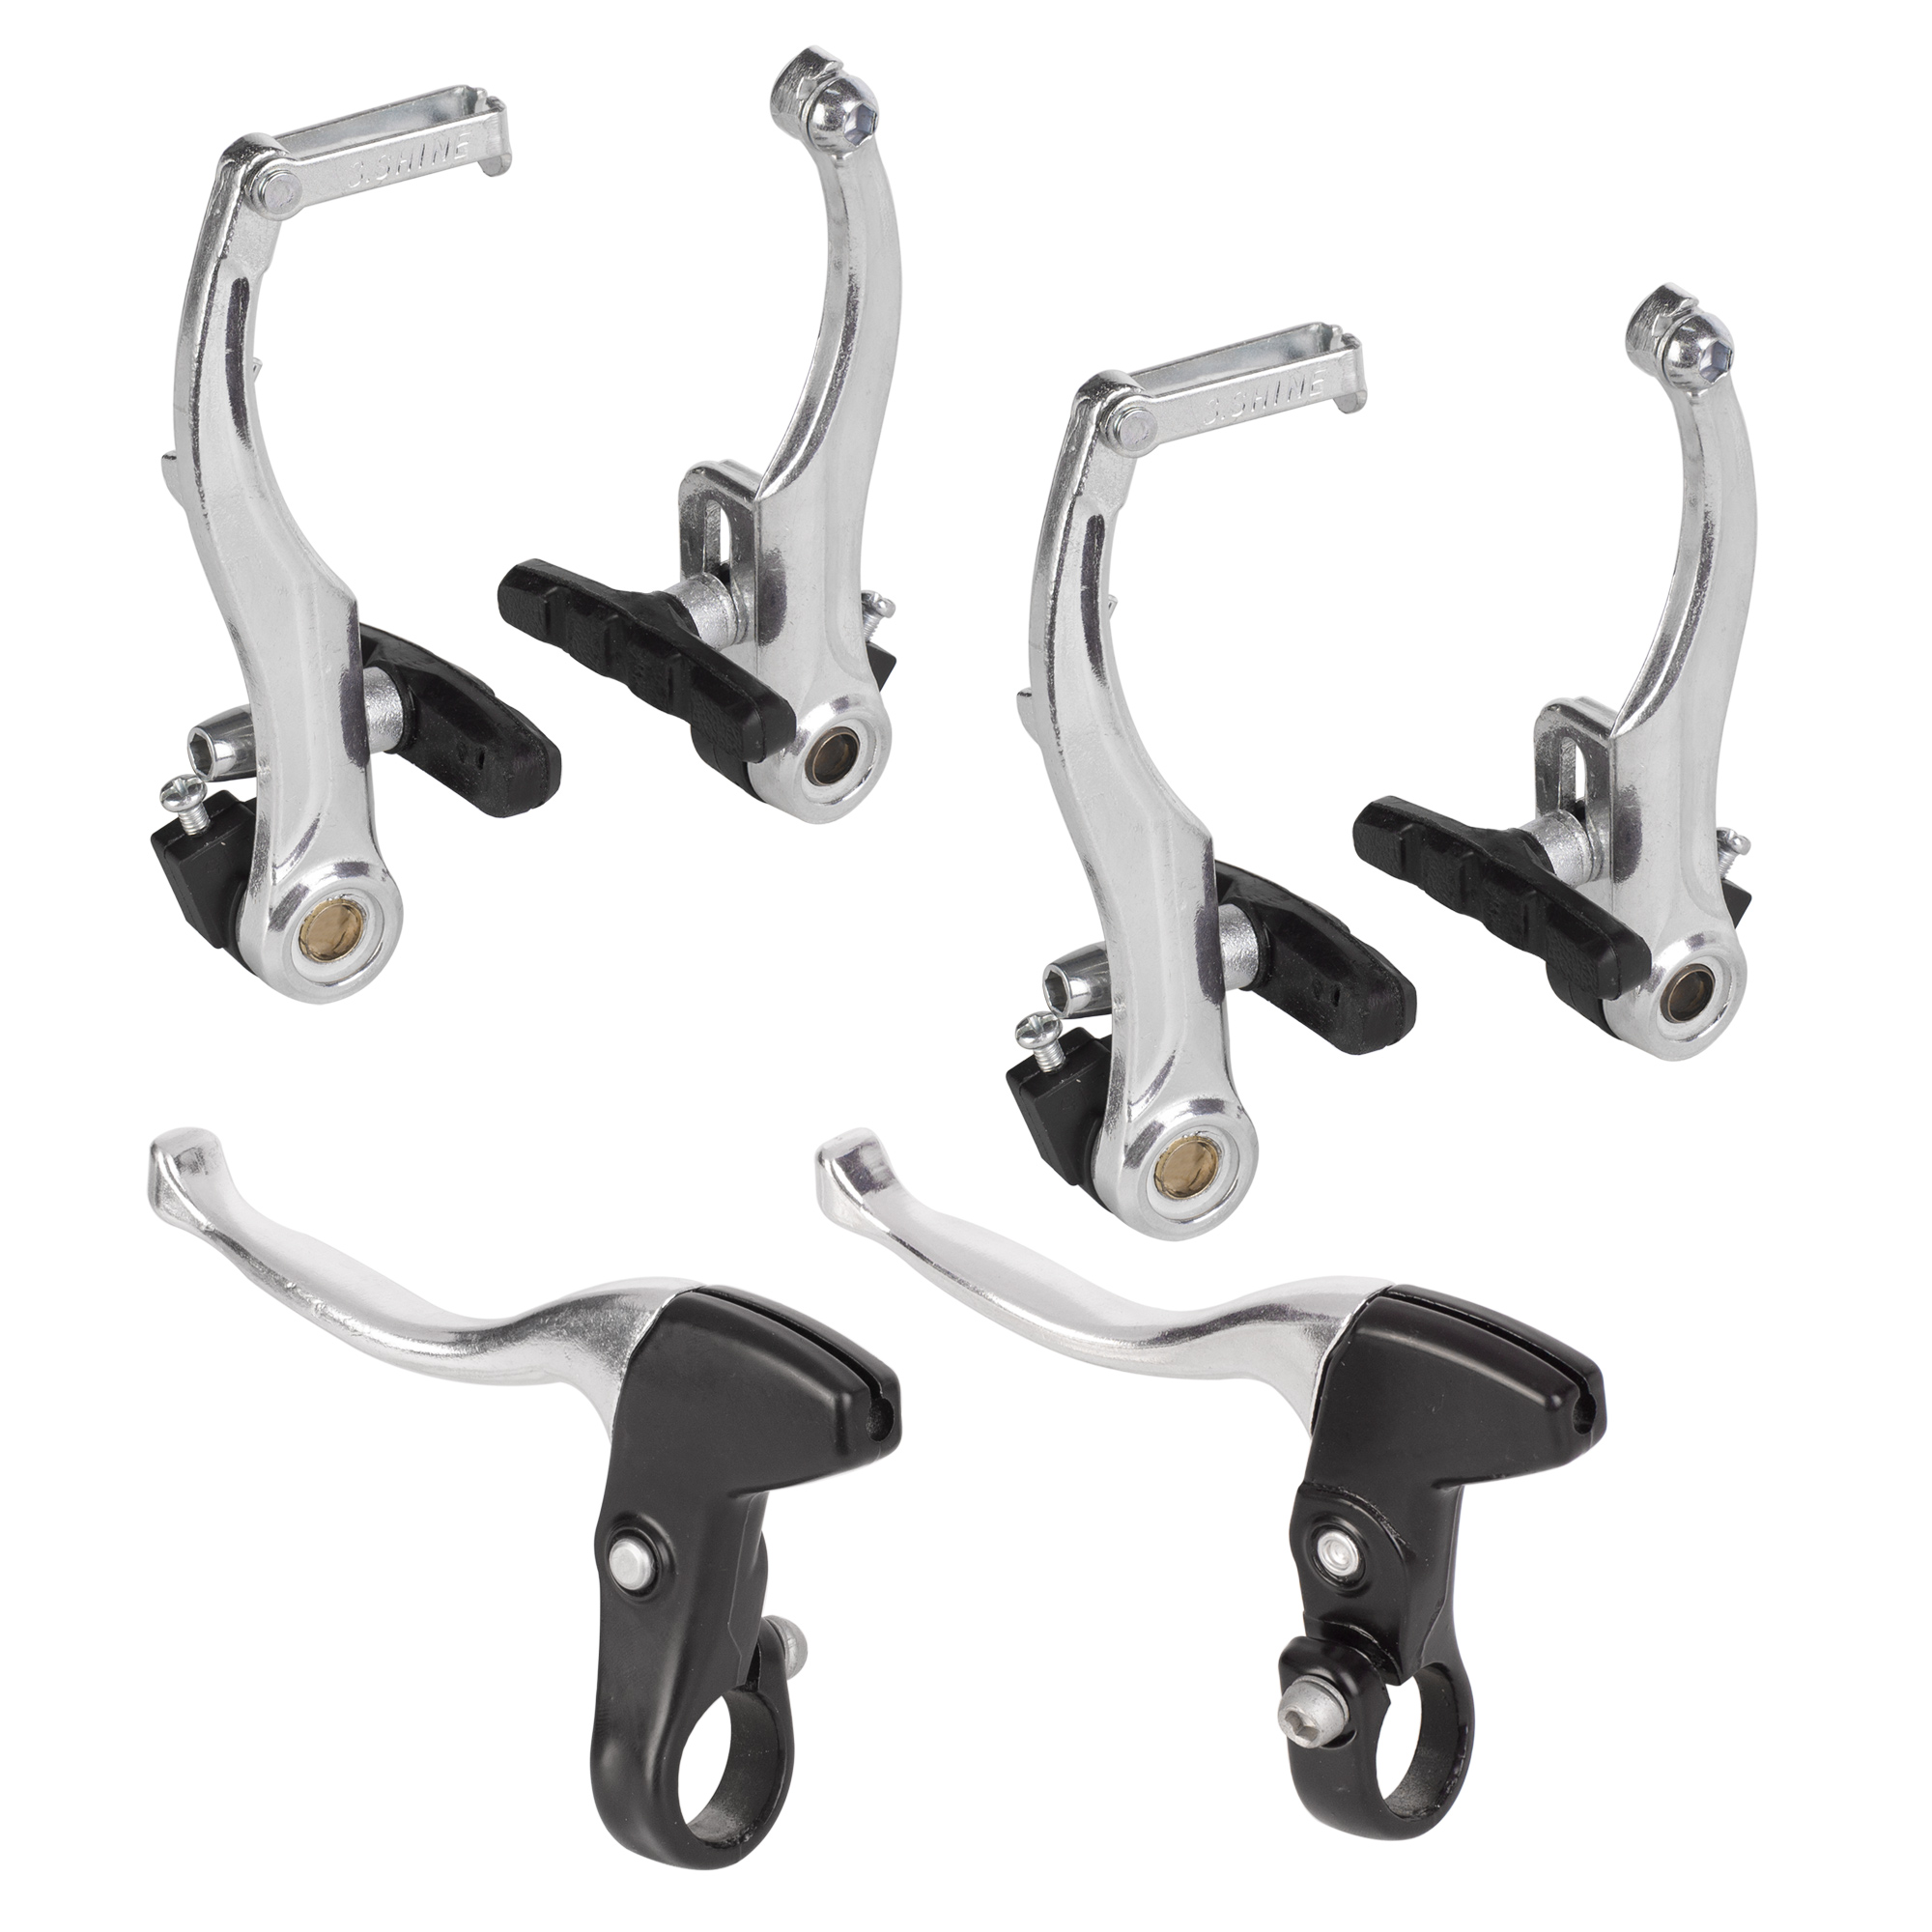 4 accesorios de freno de bicicleta que incluyen 2 manillares de freno en V  de aleación de aluminio (0.9 in de diámetro) y 2 cables de freno para